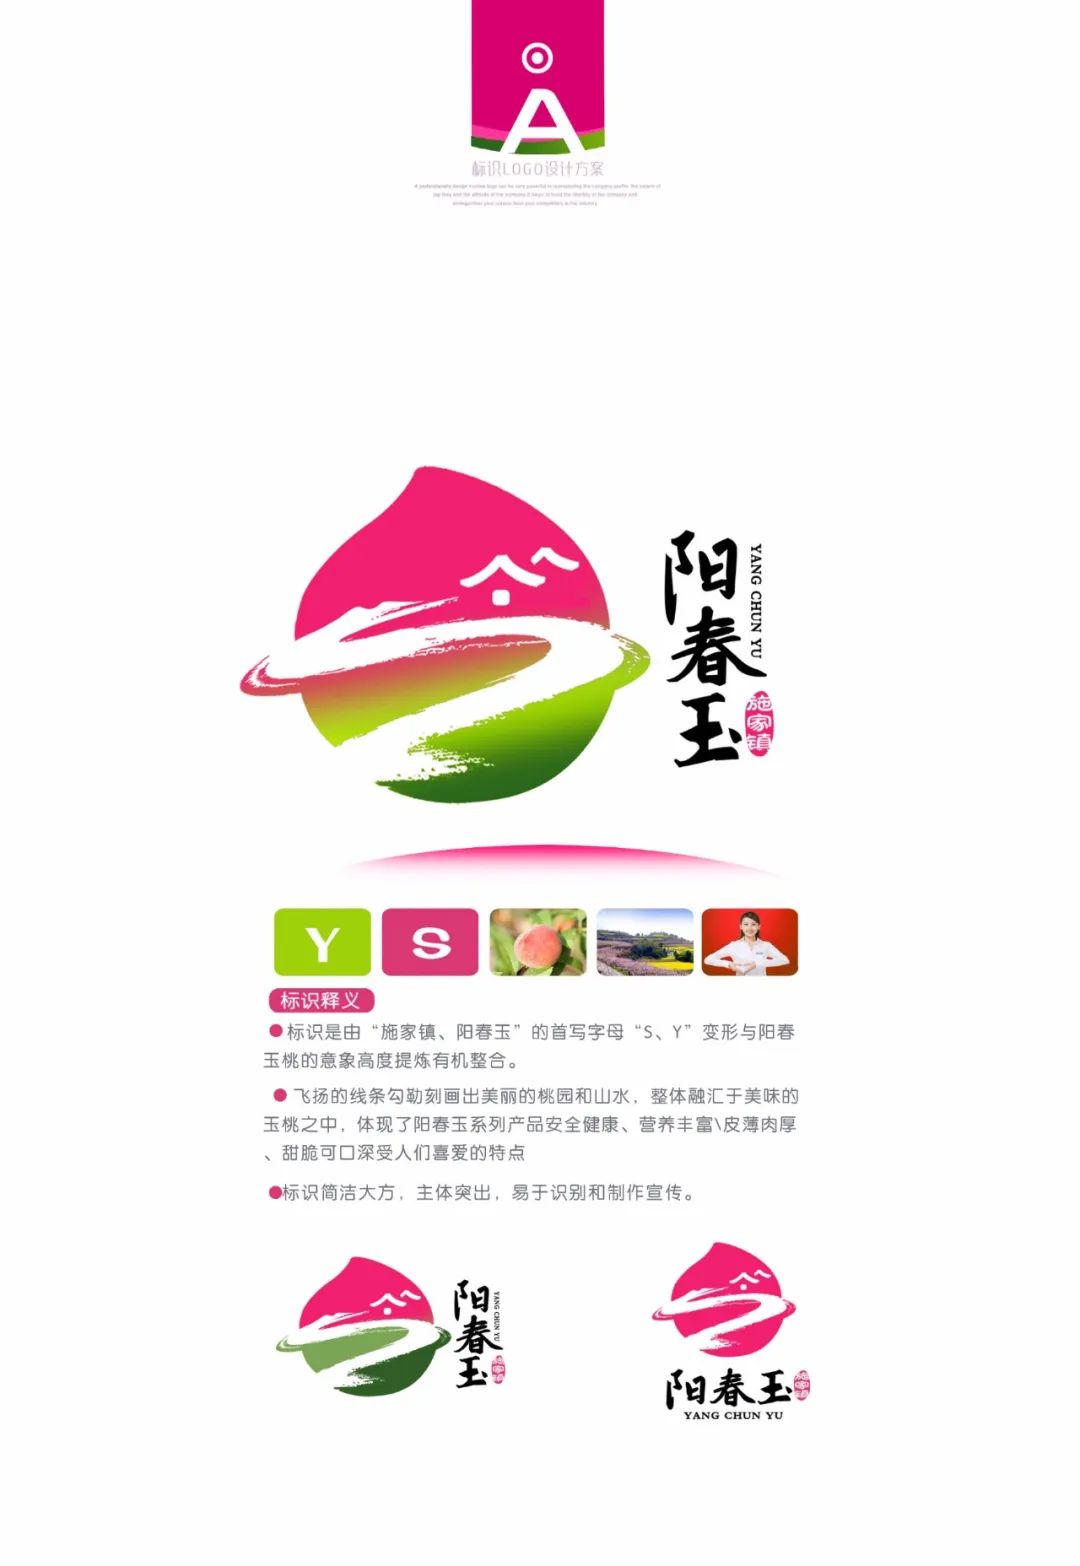 简阳施家镇阳春玉桃logo创意设计及包装盒创意设计评选活动结果出炉啦